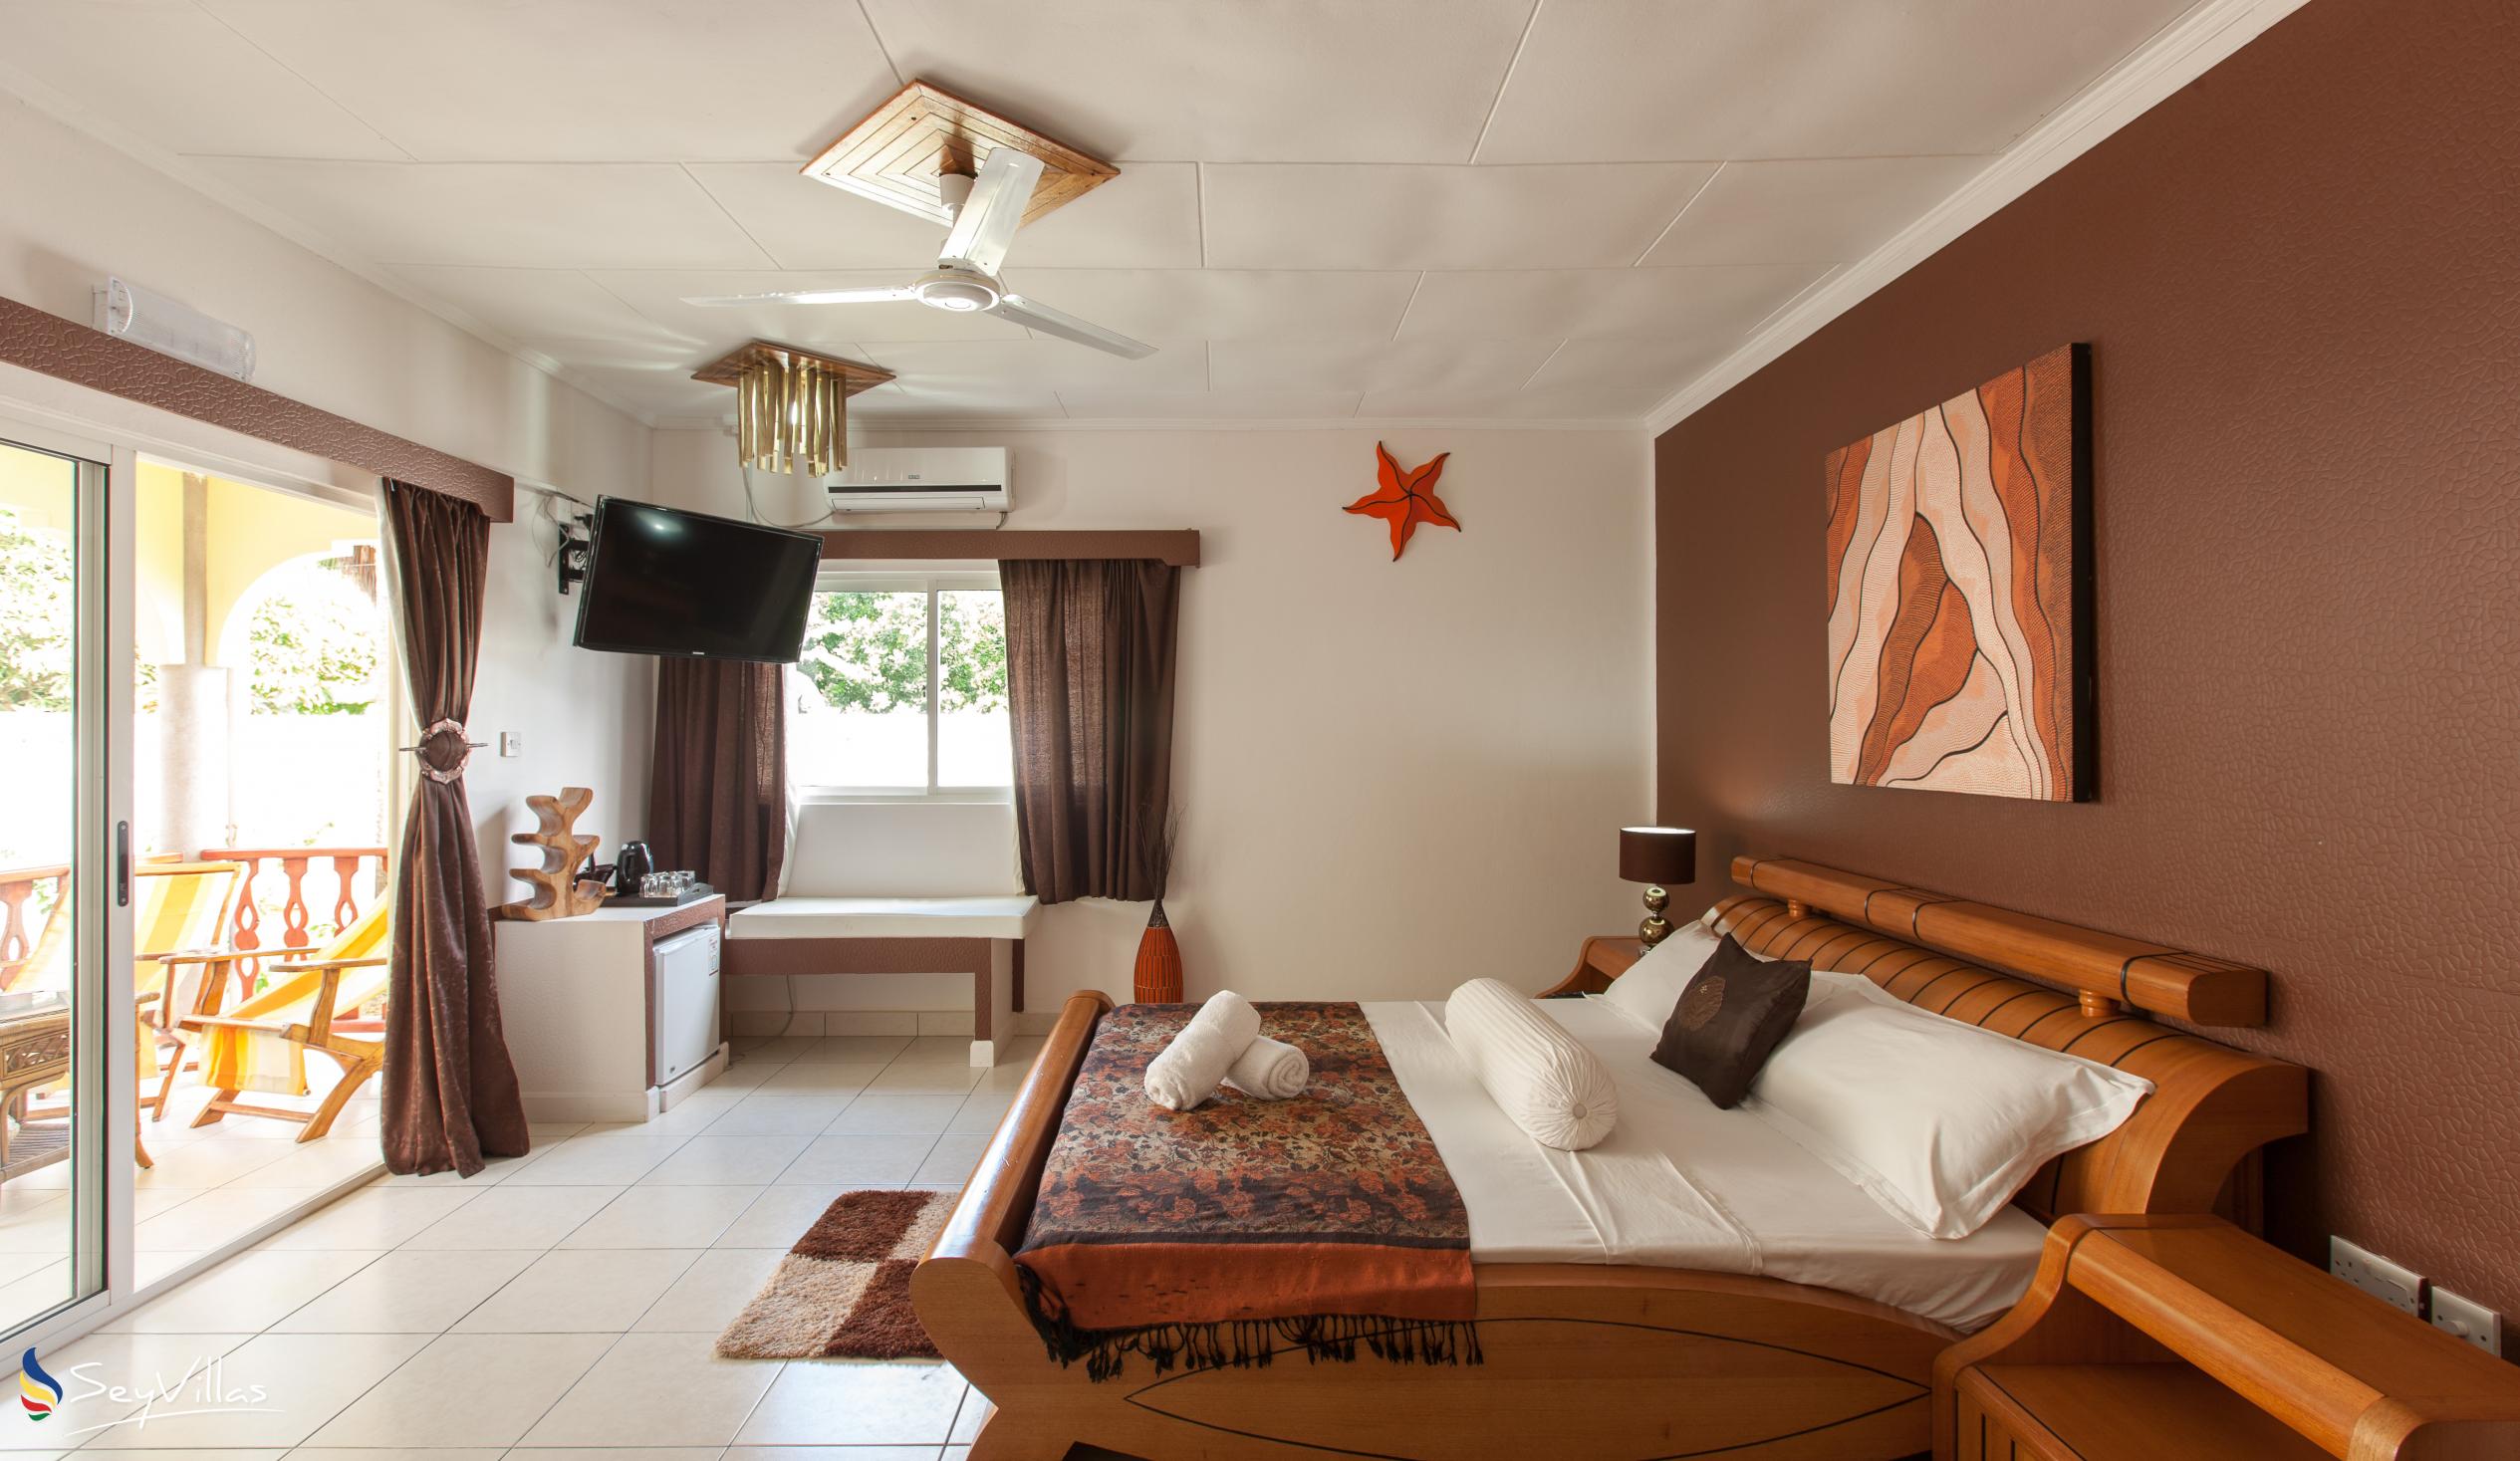 Photo 32: Villa Authentique - King Room - La Digue (Seychelles)